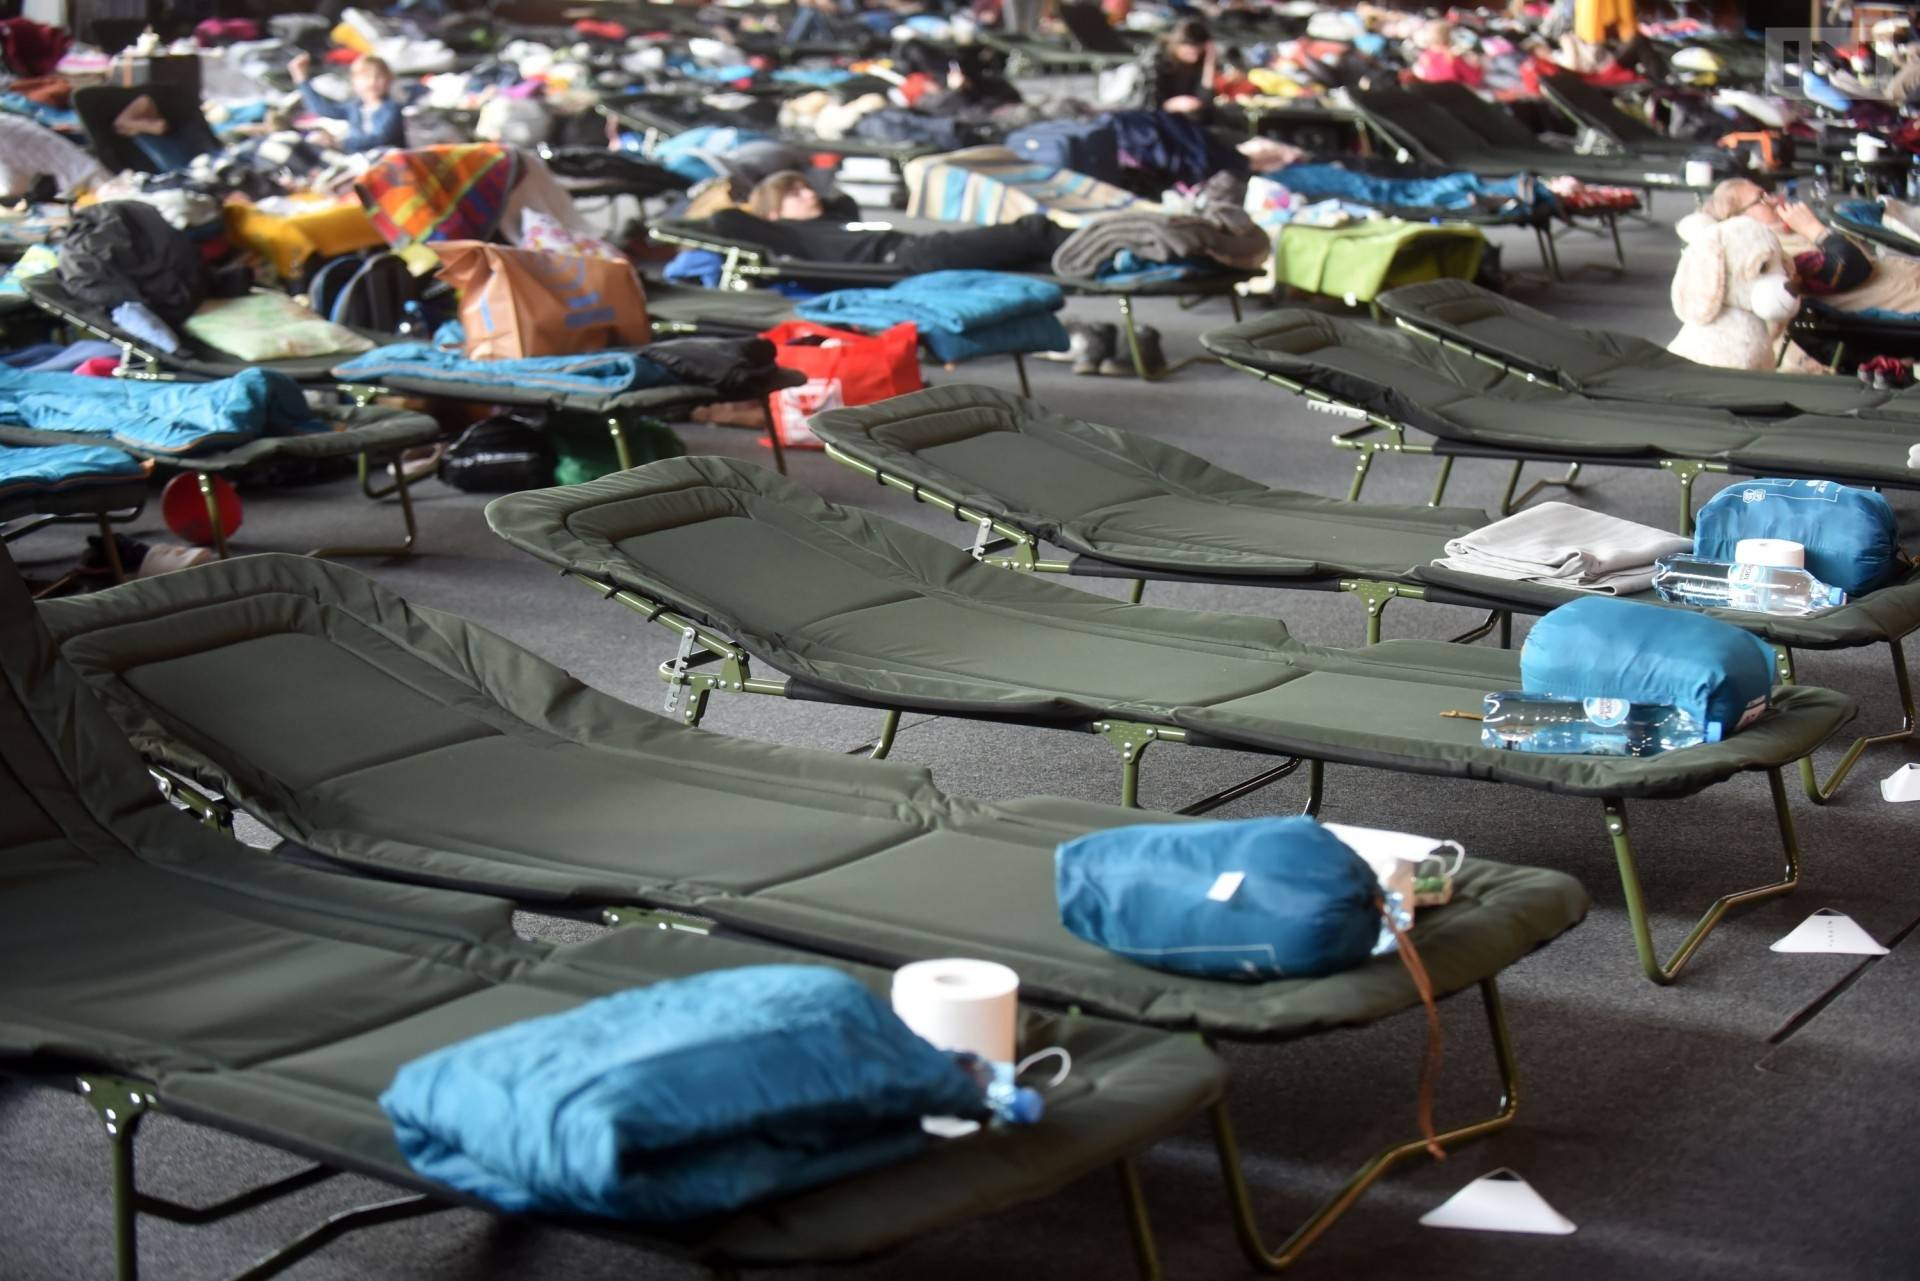 Hala 100-lecia Cracovii nie będzie już schronieniem dla uchodźców. "Inne zobowiązania"